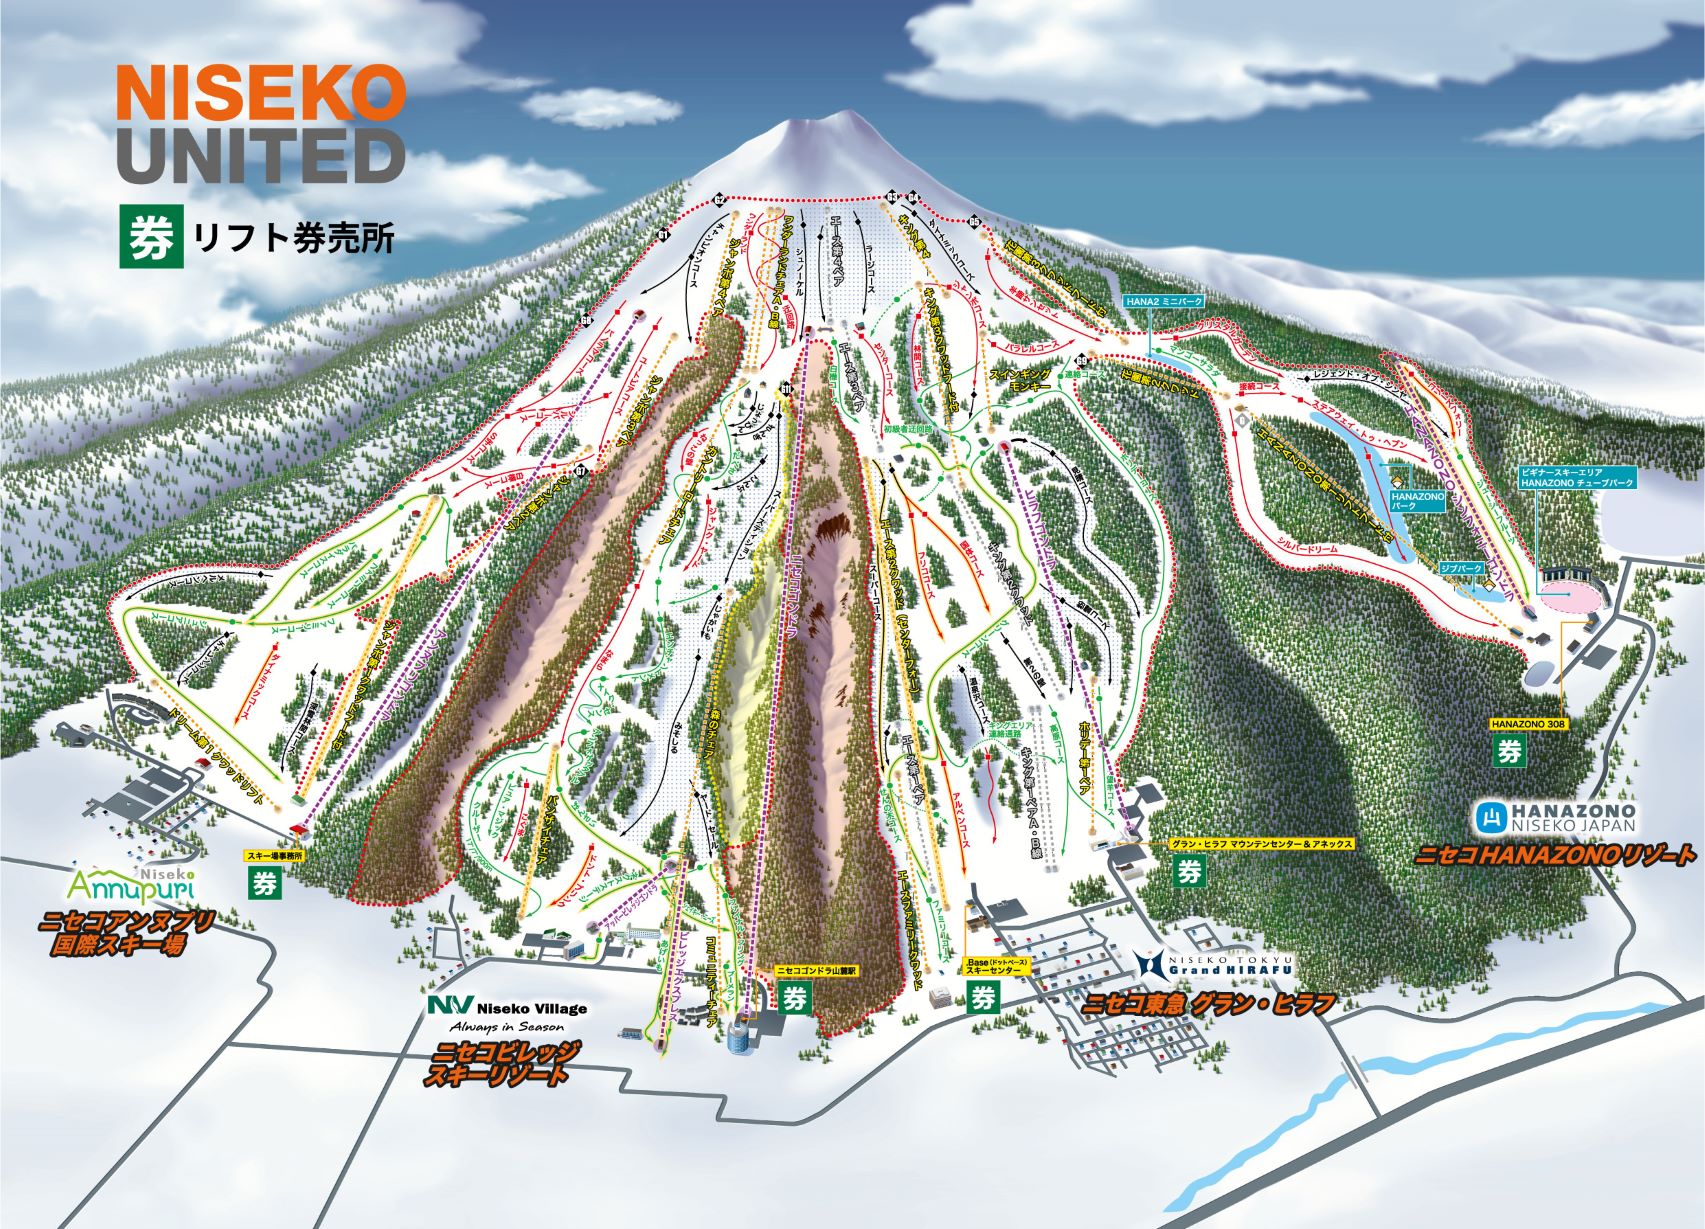 ニセコ スキー場 リフト券 2枚セット - inisnu.ac.id